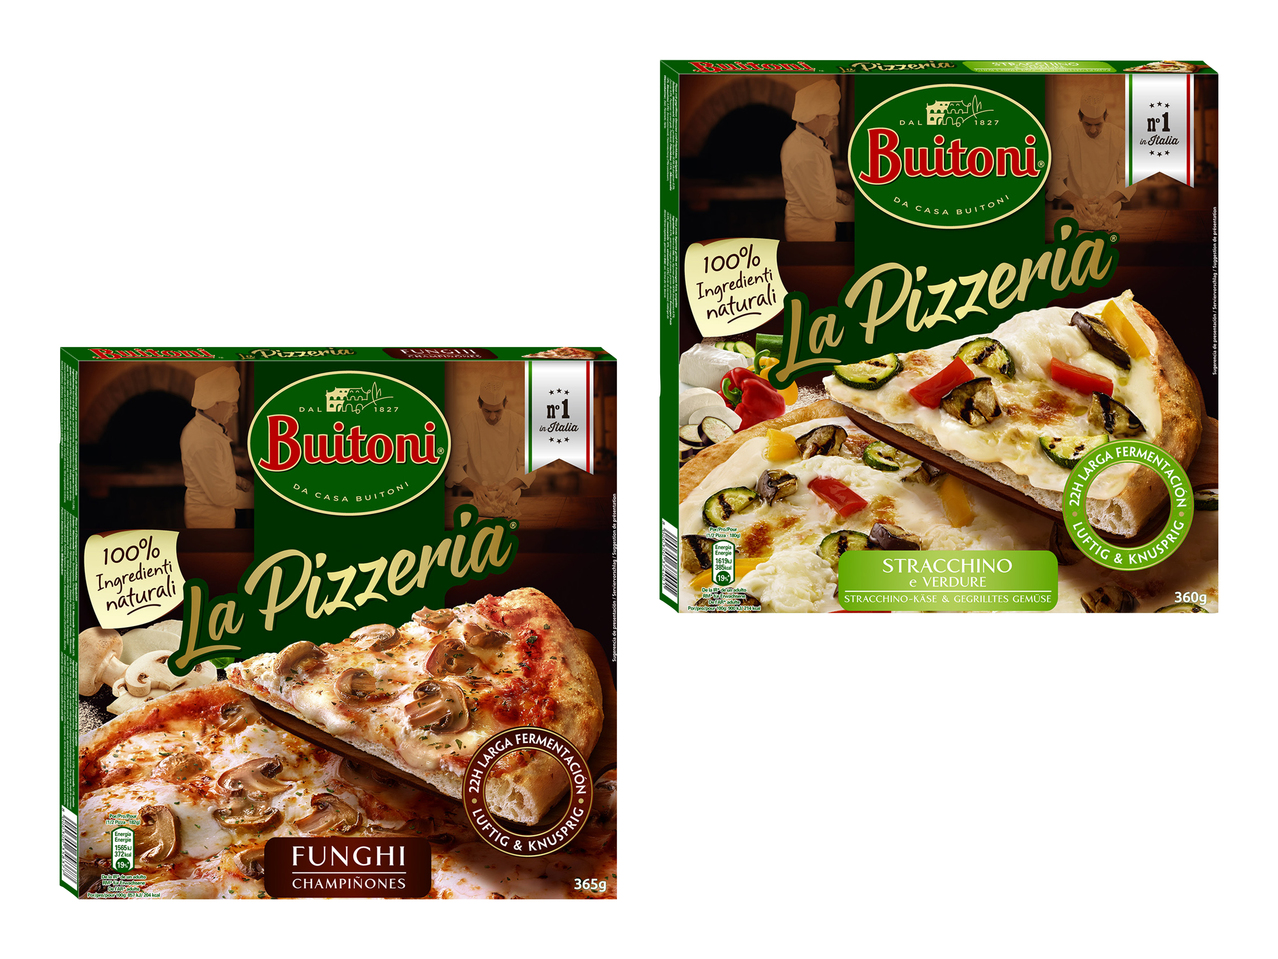 Pizza funghi/ stracchino e verdure la Pizzeria Buitoni